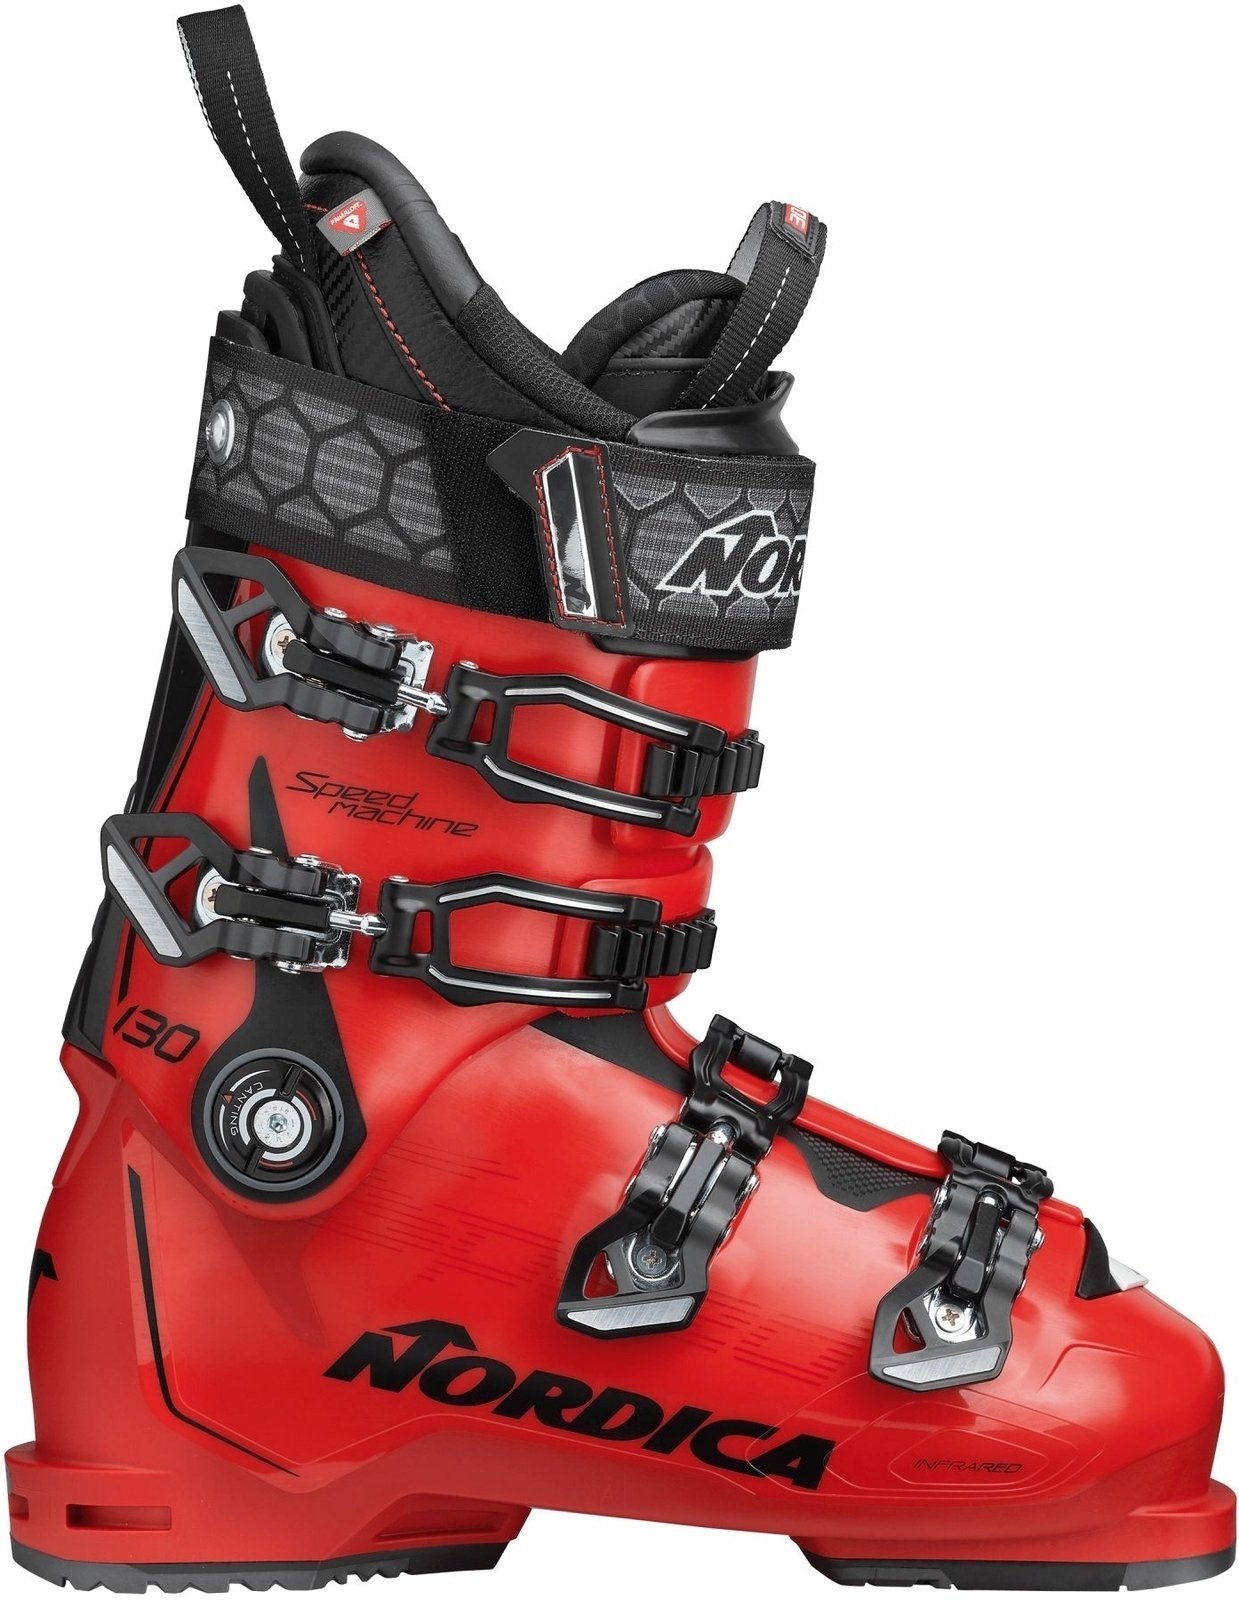 Alpine Ski Boots Nordica Speedmachine Red-Black 290 Alpine Ski Boots